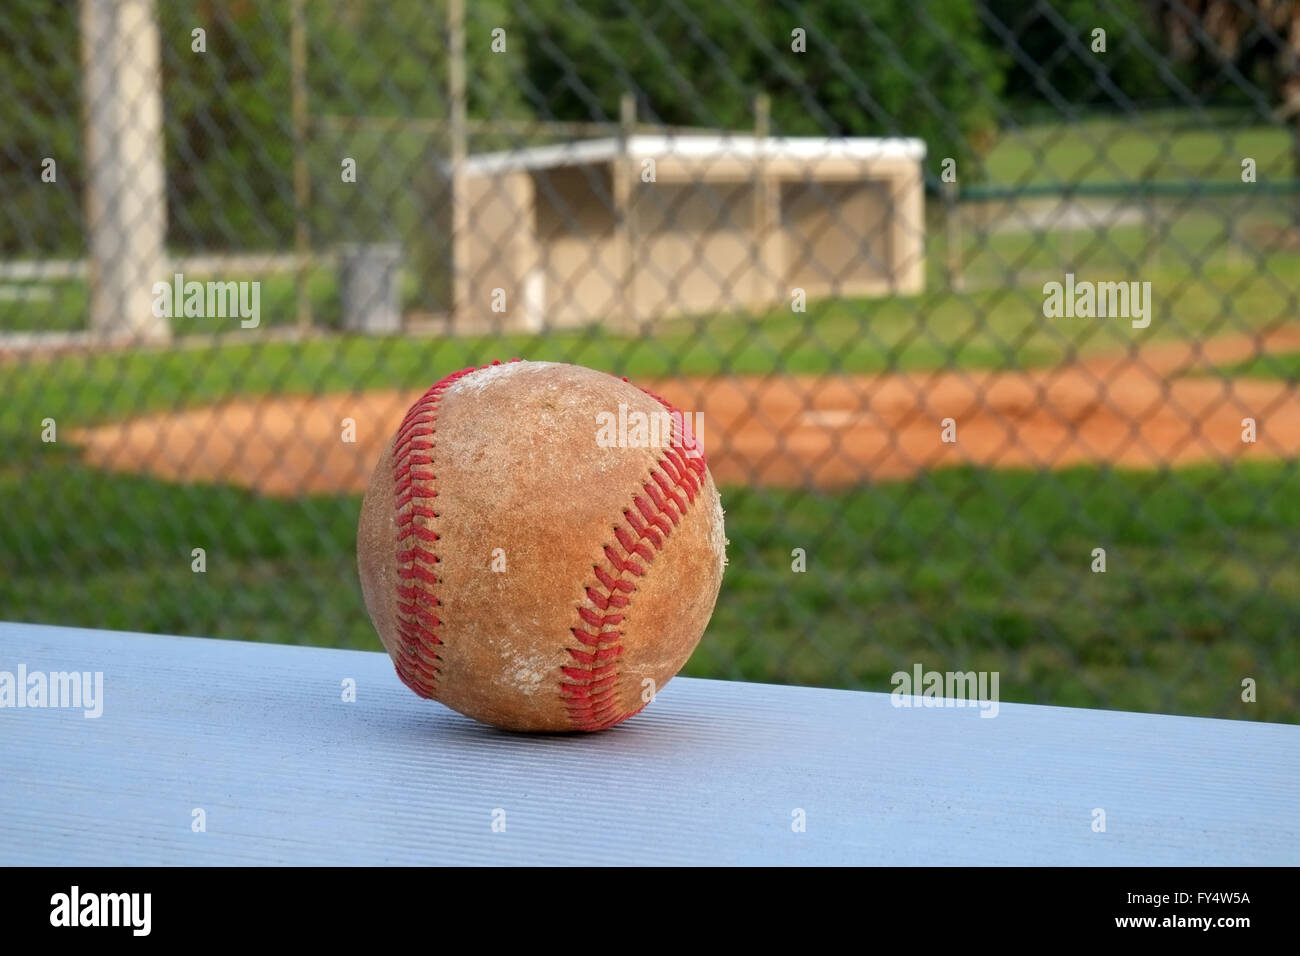 Viste di baseball con una piroga in background Aprile 2016 Foto Stock